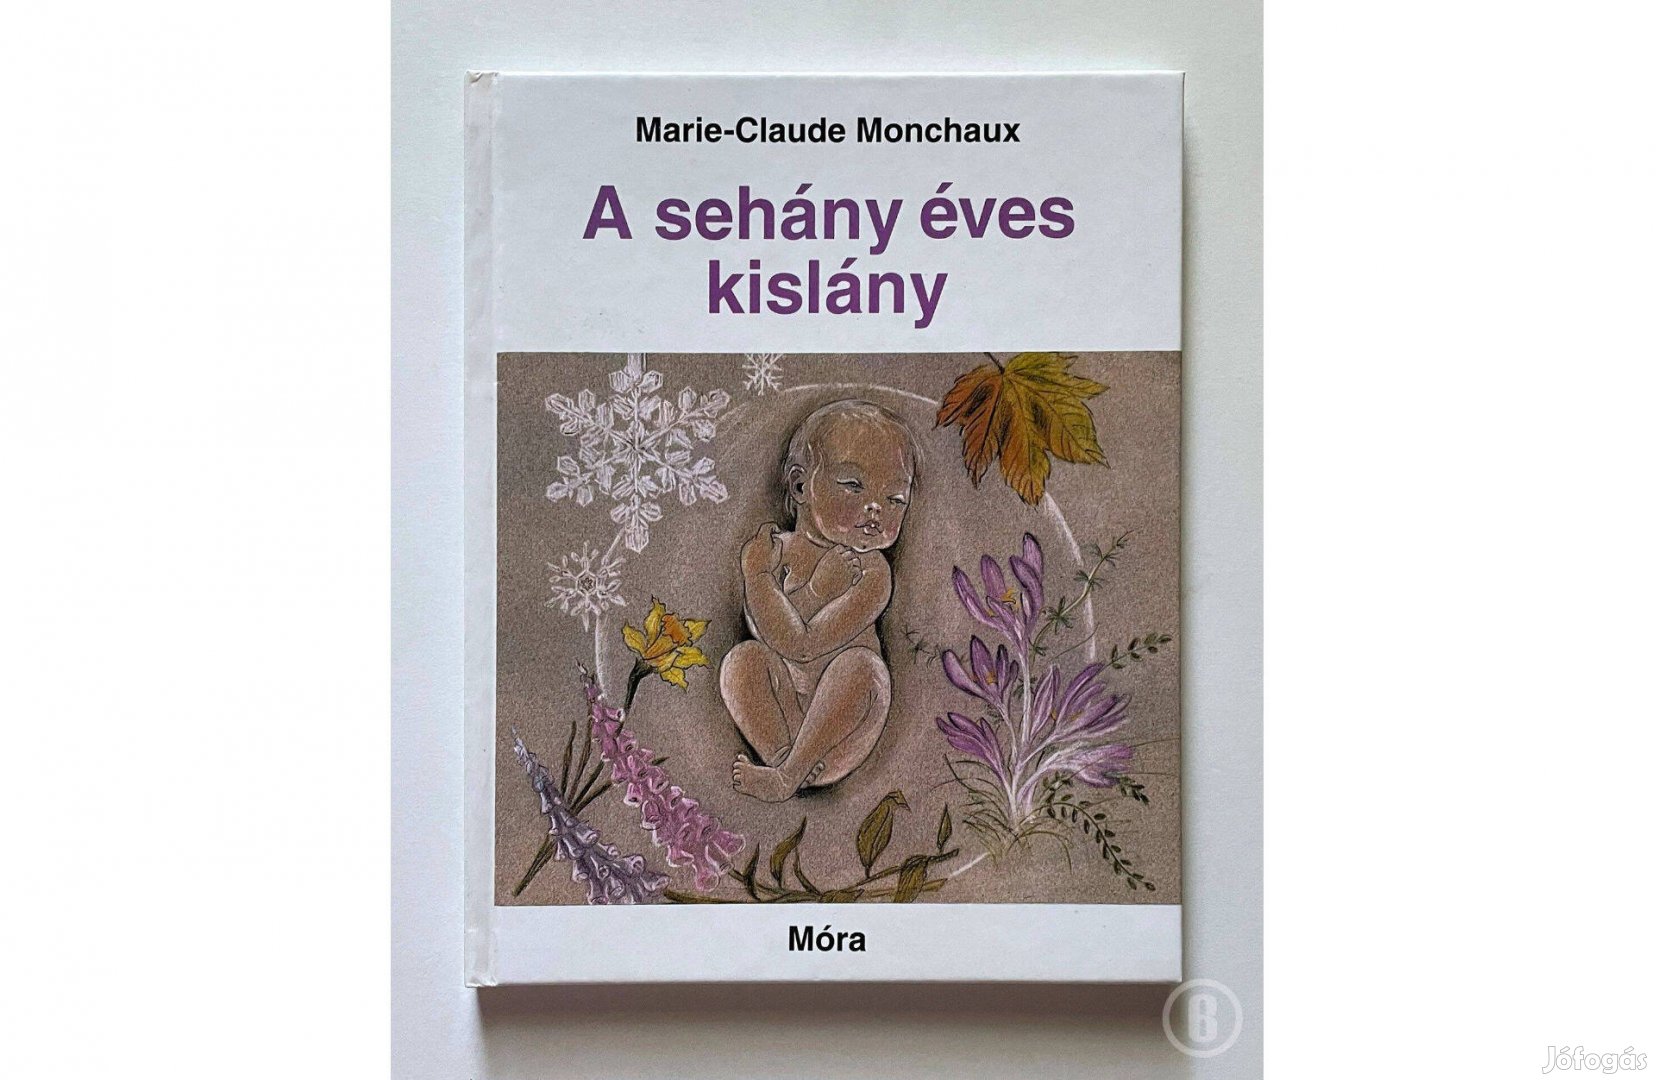 Marie-Claude Monchaux: A sehány éves kislány